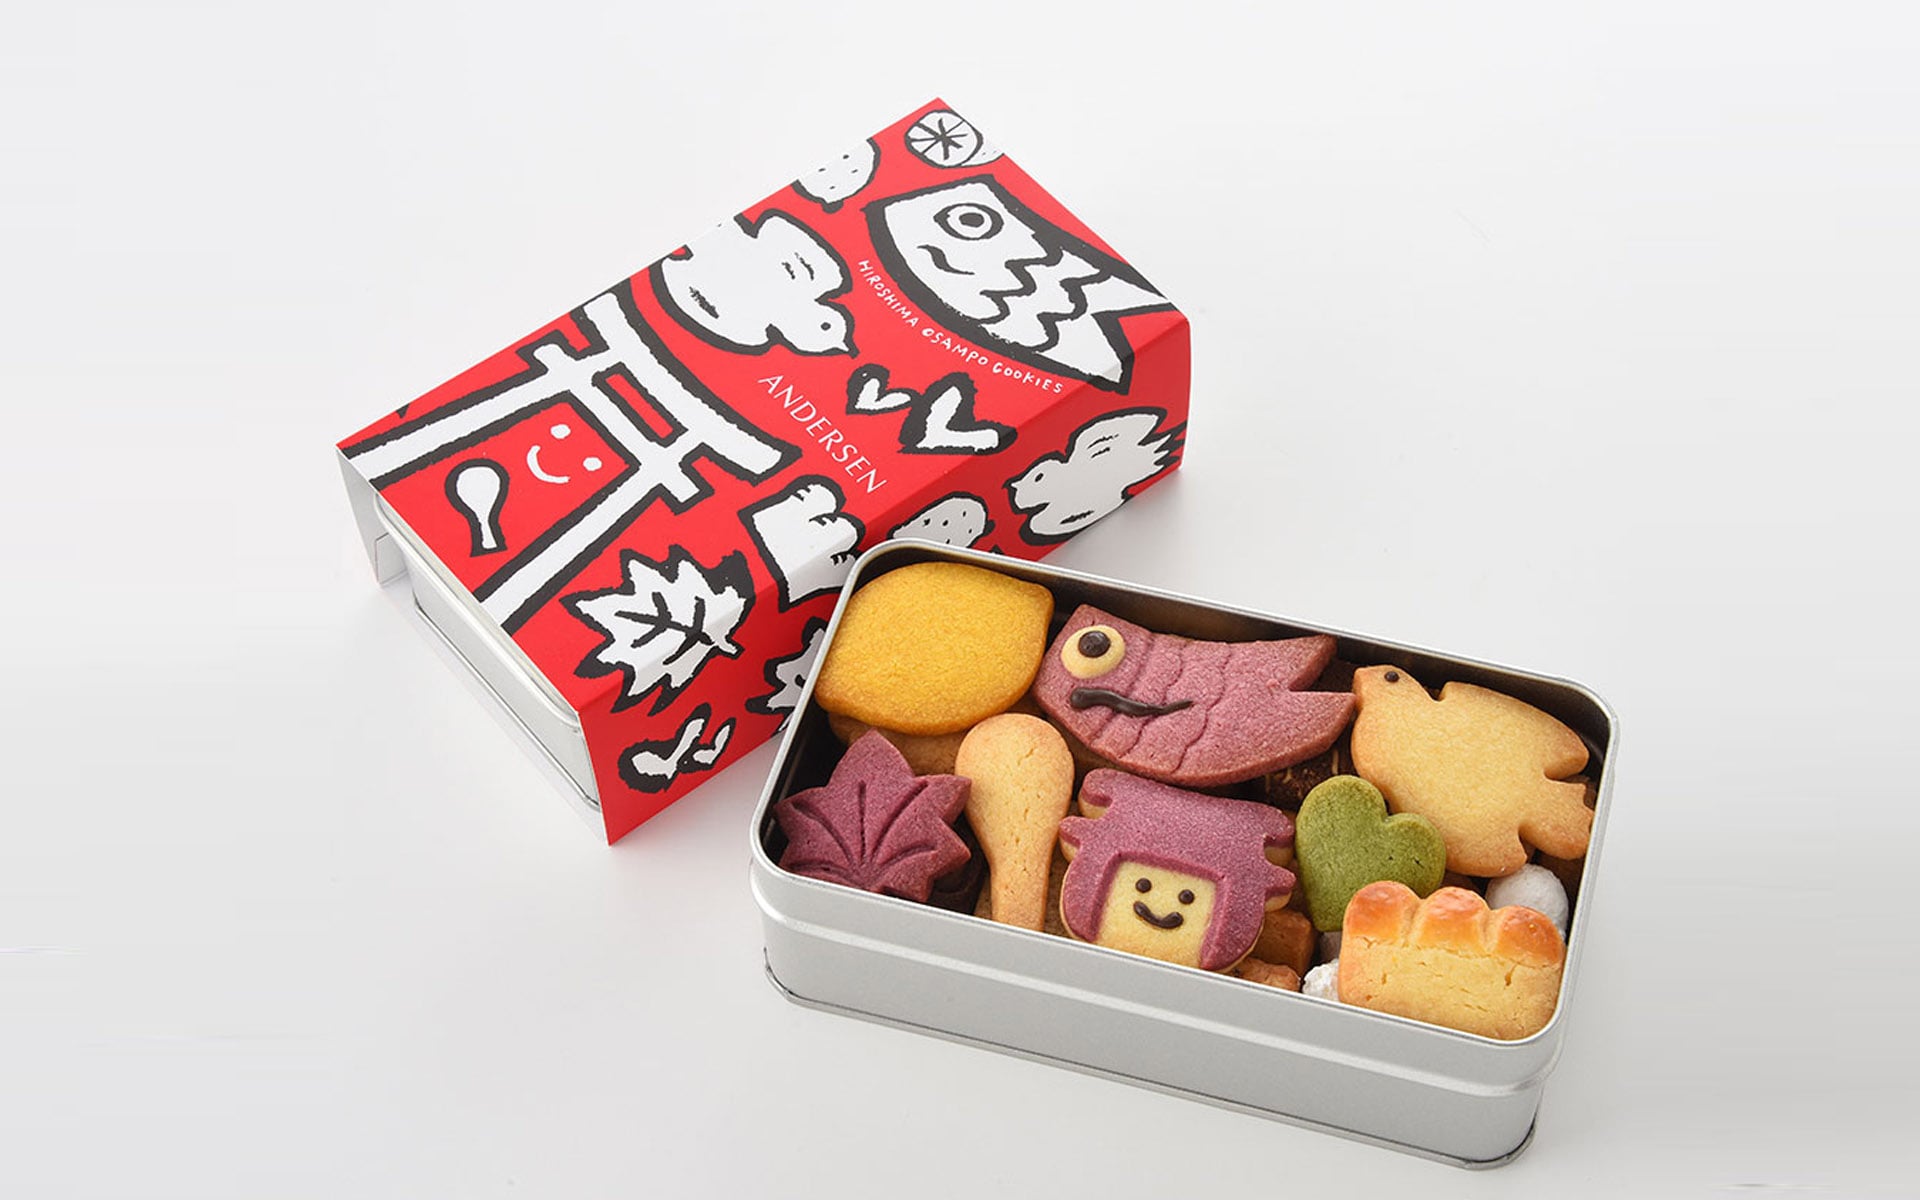 G7広島サミットでアンデルセンのクッキー缶「広島おさんぽクッキー」が提供されました。